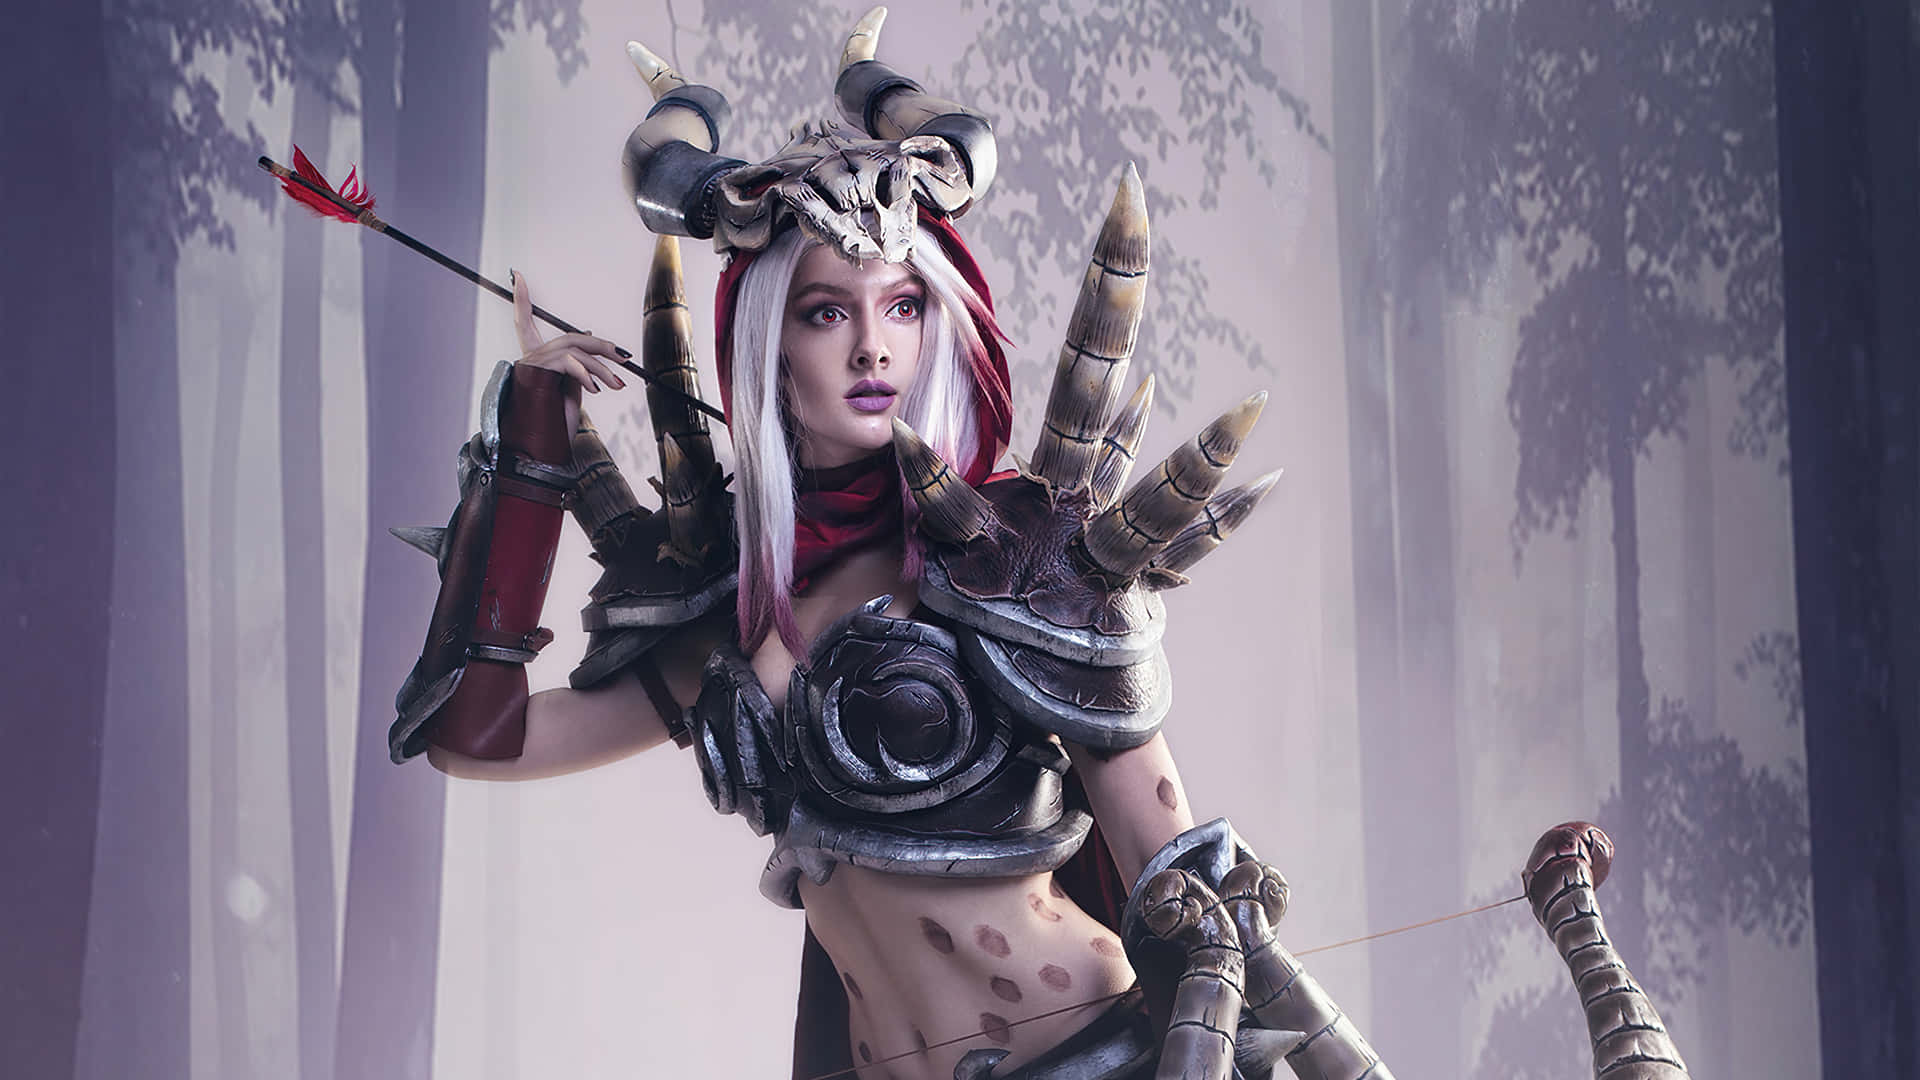 Sylvanas Windrunner, Banshee Queen Of The Forsaken In World Of Warcraft Wallpaper